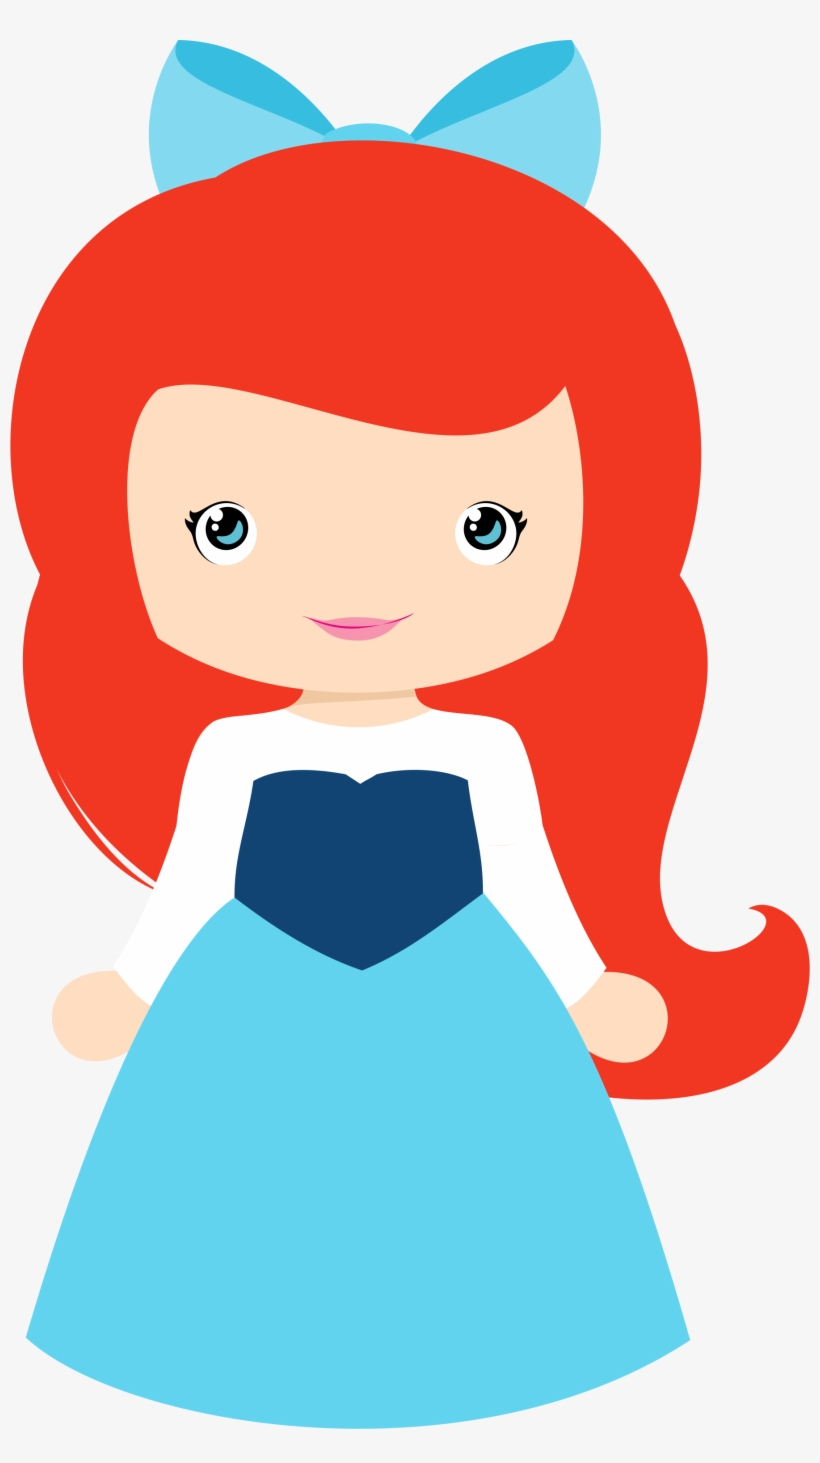 Disney Princess - Little Disney Princess Png, transparent png #325854